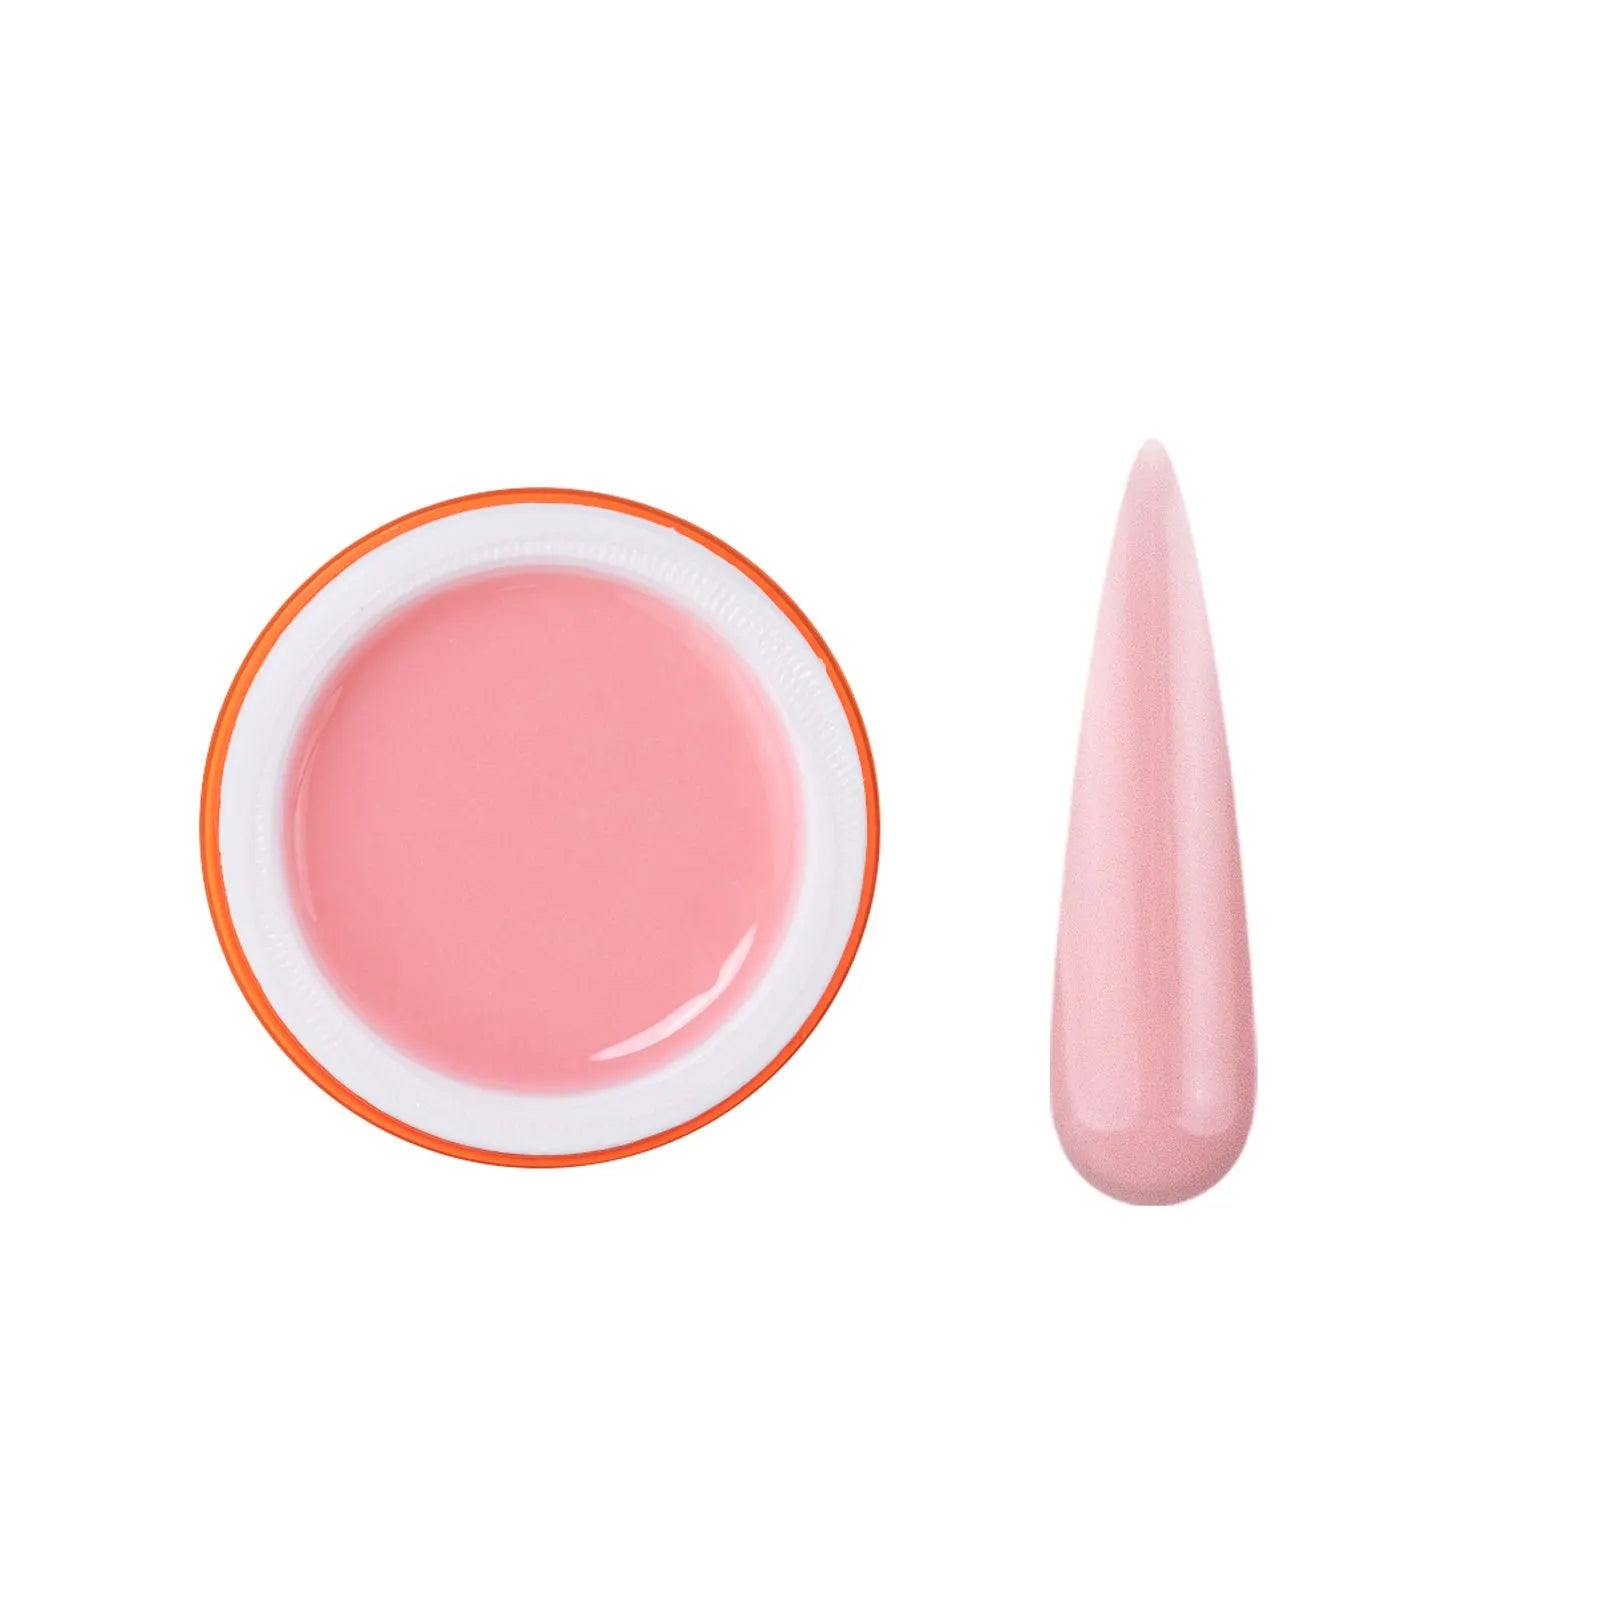 Bluwe Gummy Gel Baby Pink - 30g